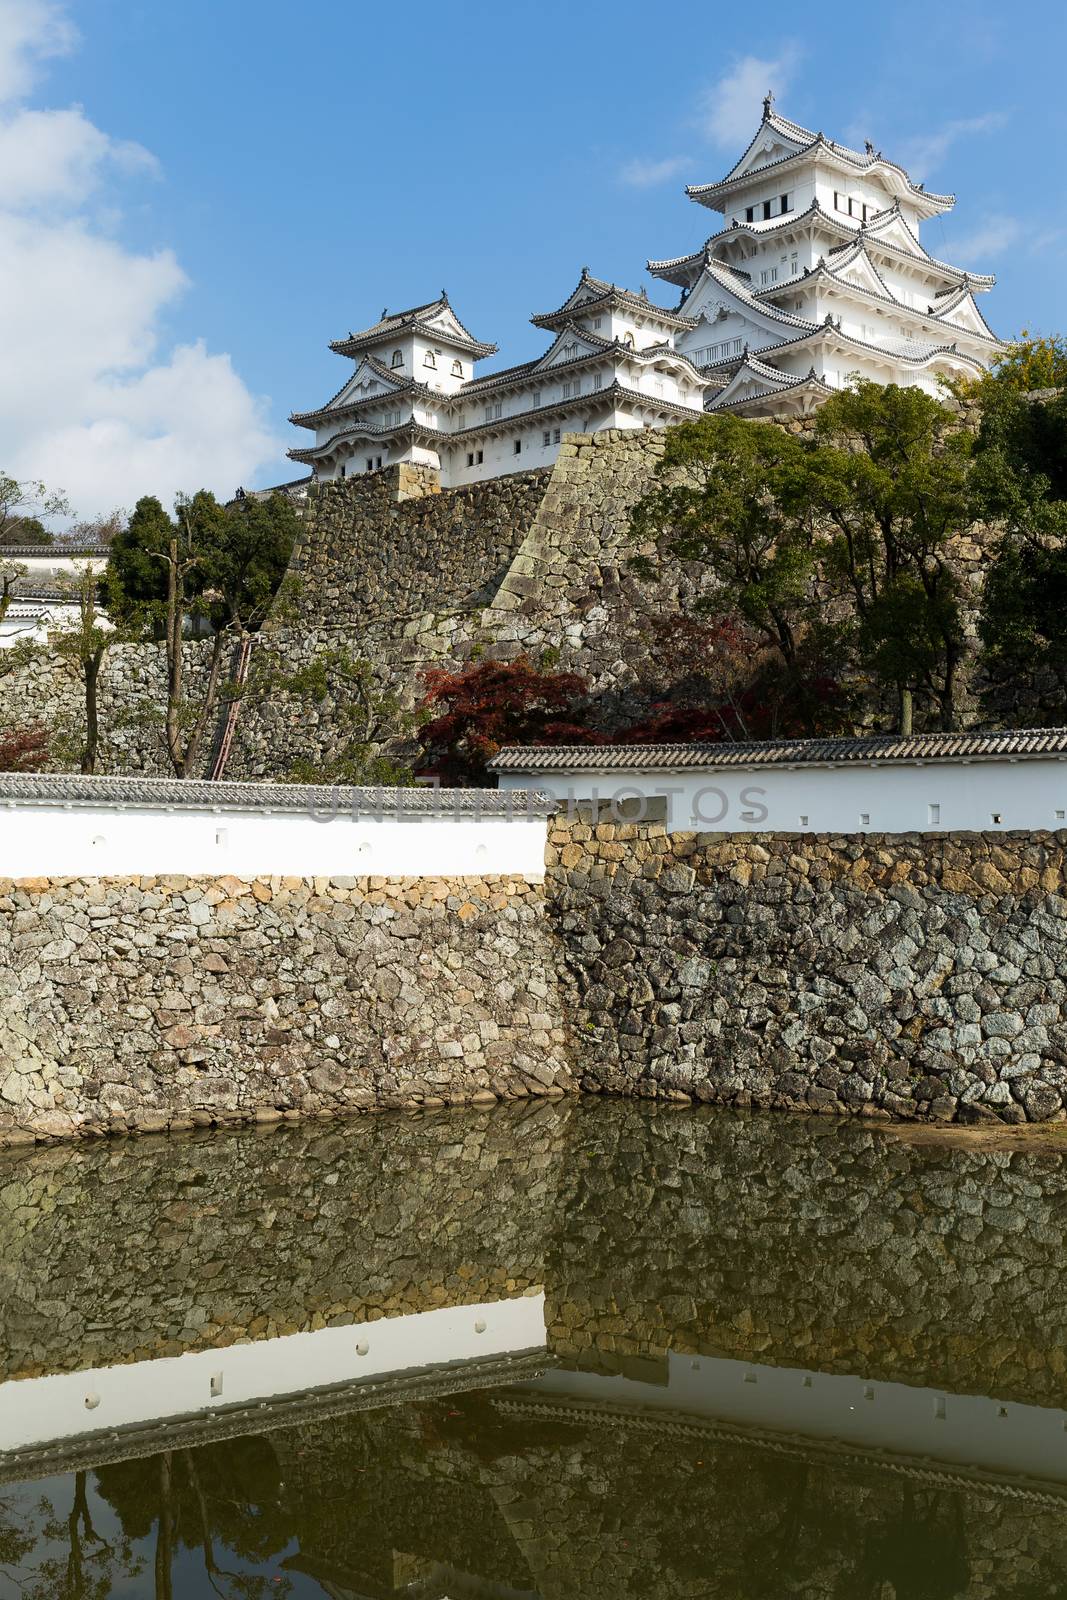 Himeji castle in Japan by leungchopan